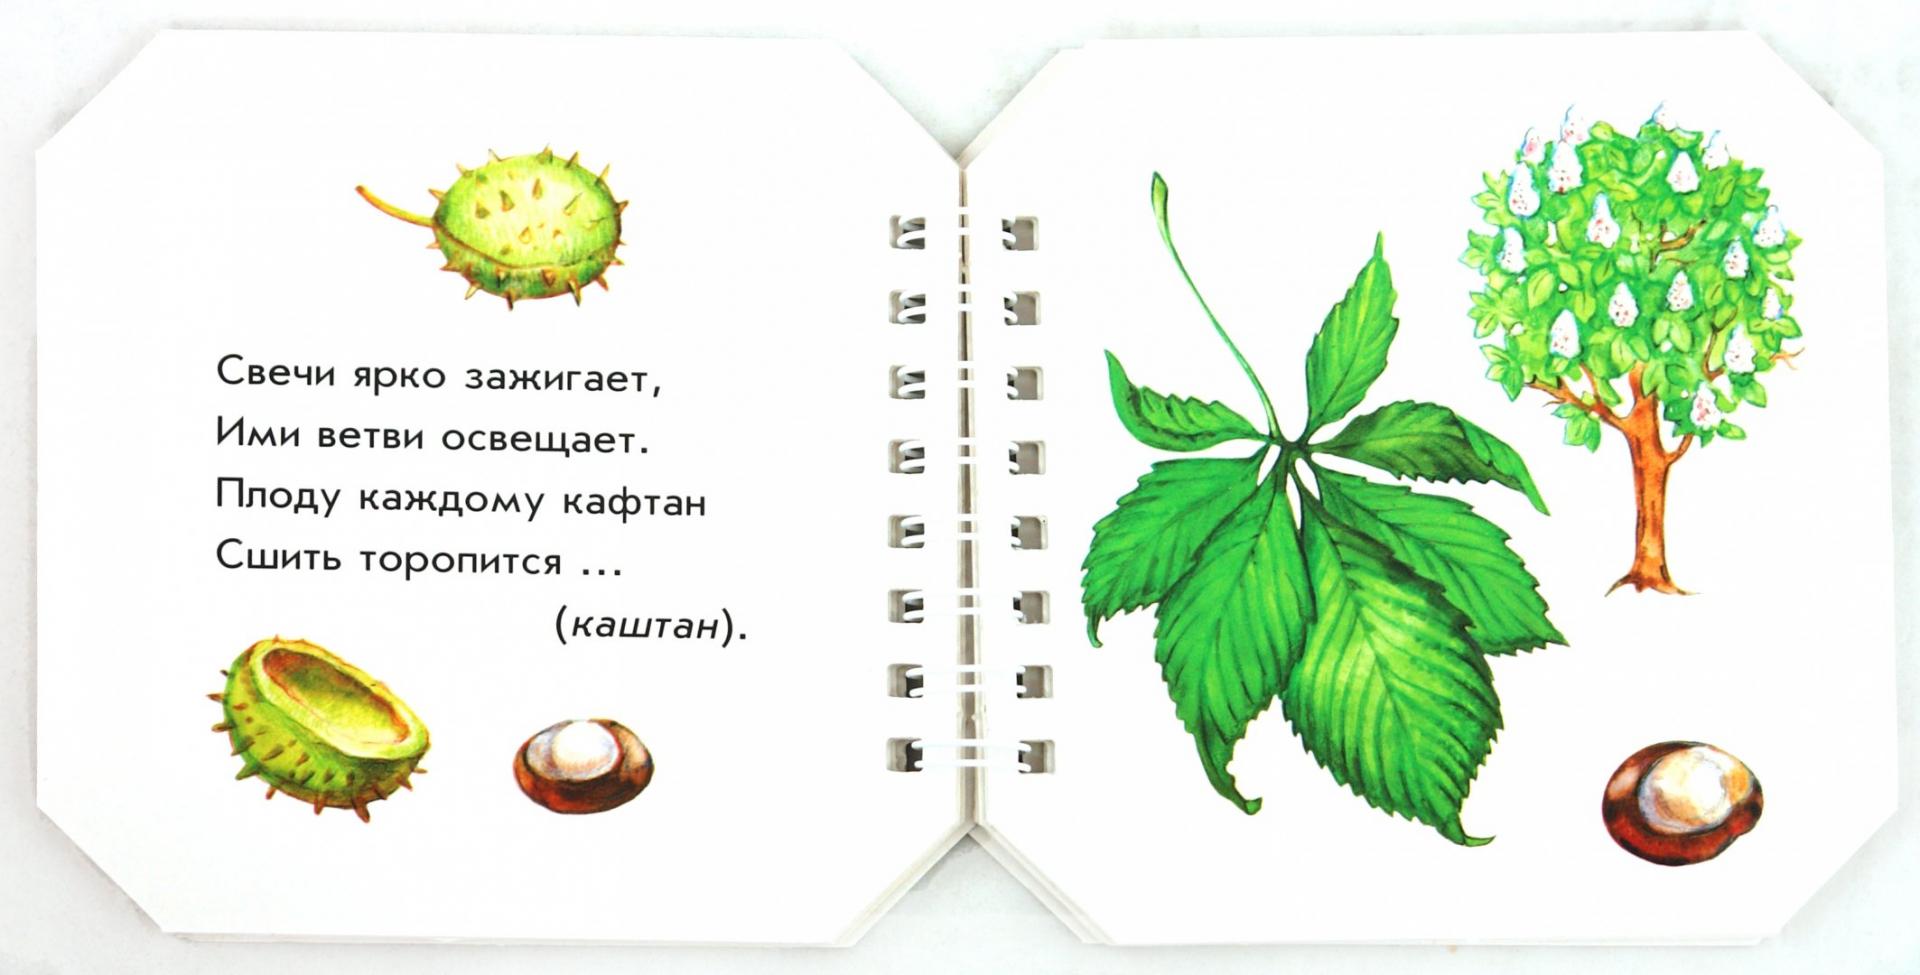 Иллюстрация 1 из 13 для Что в парке растёт - А. Геращенко | Лабиринт - книги. Источник: Лабиринт